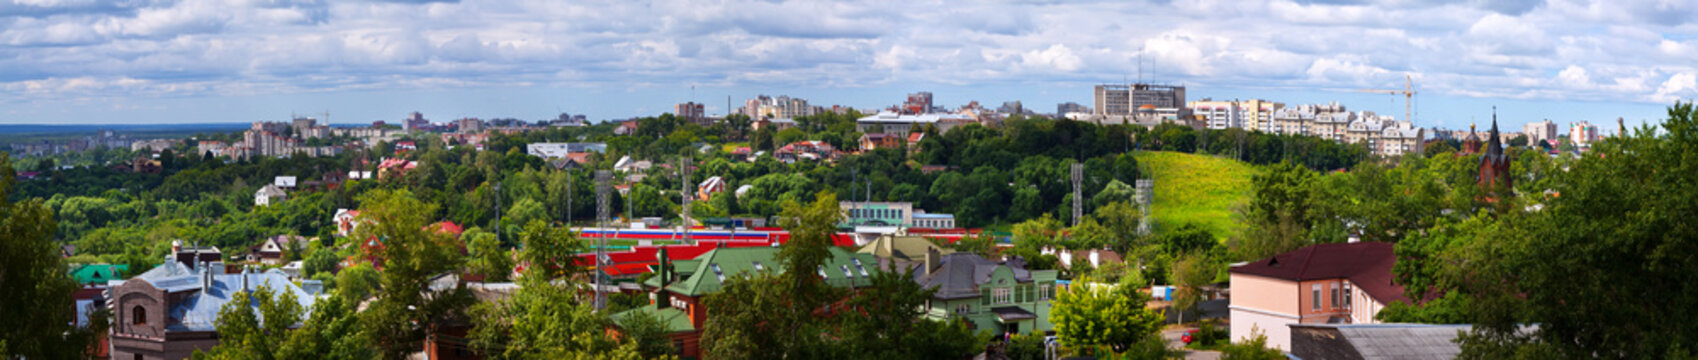 Panorama of Vladimir